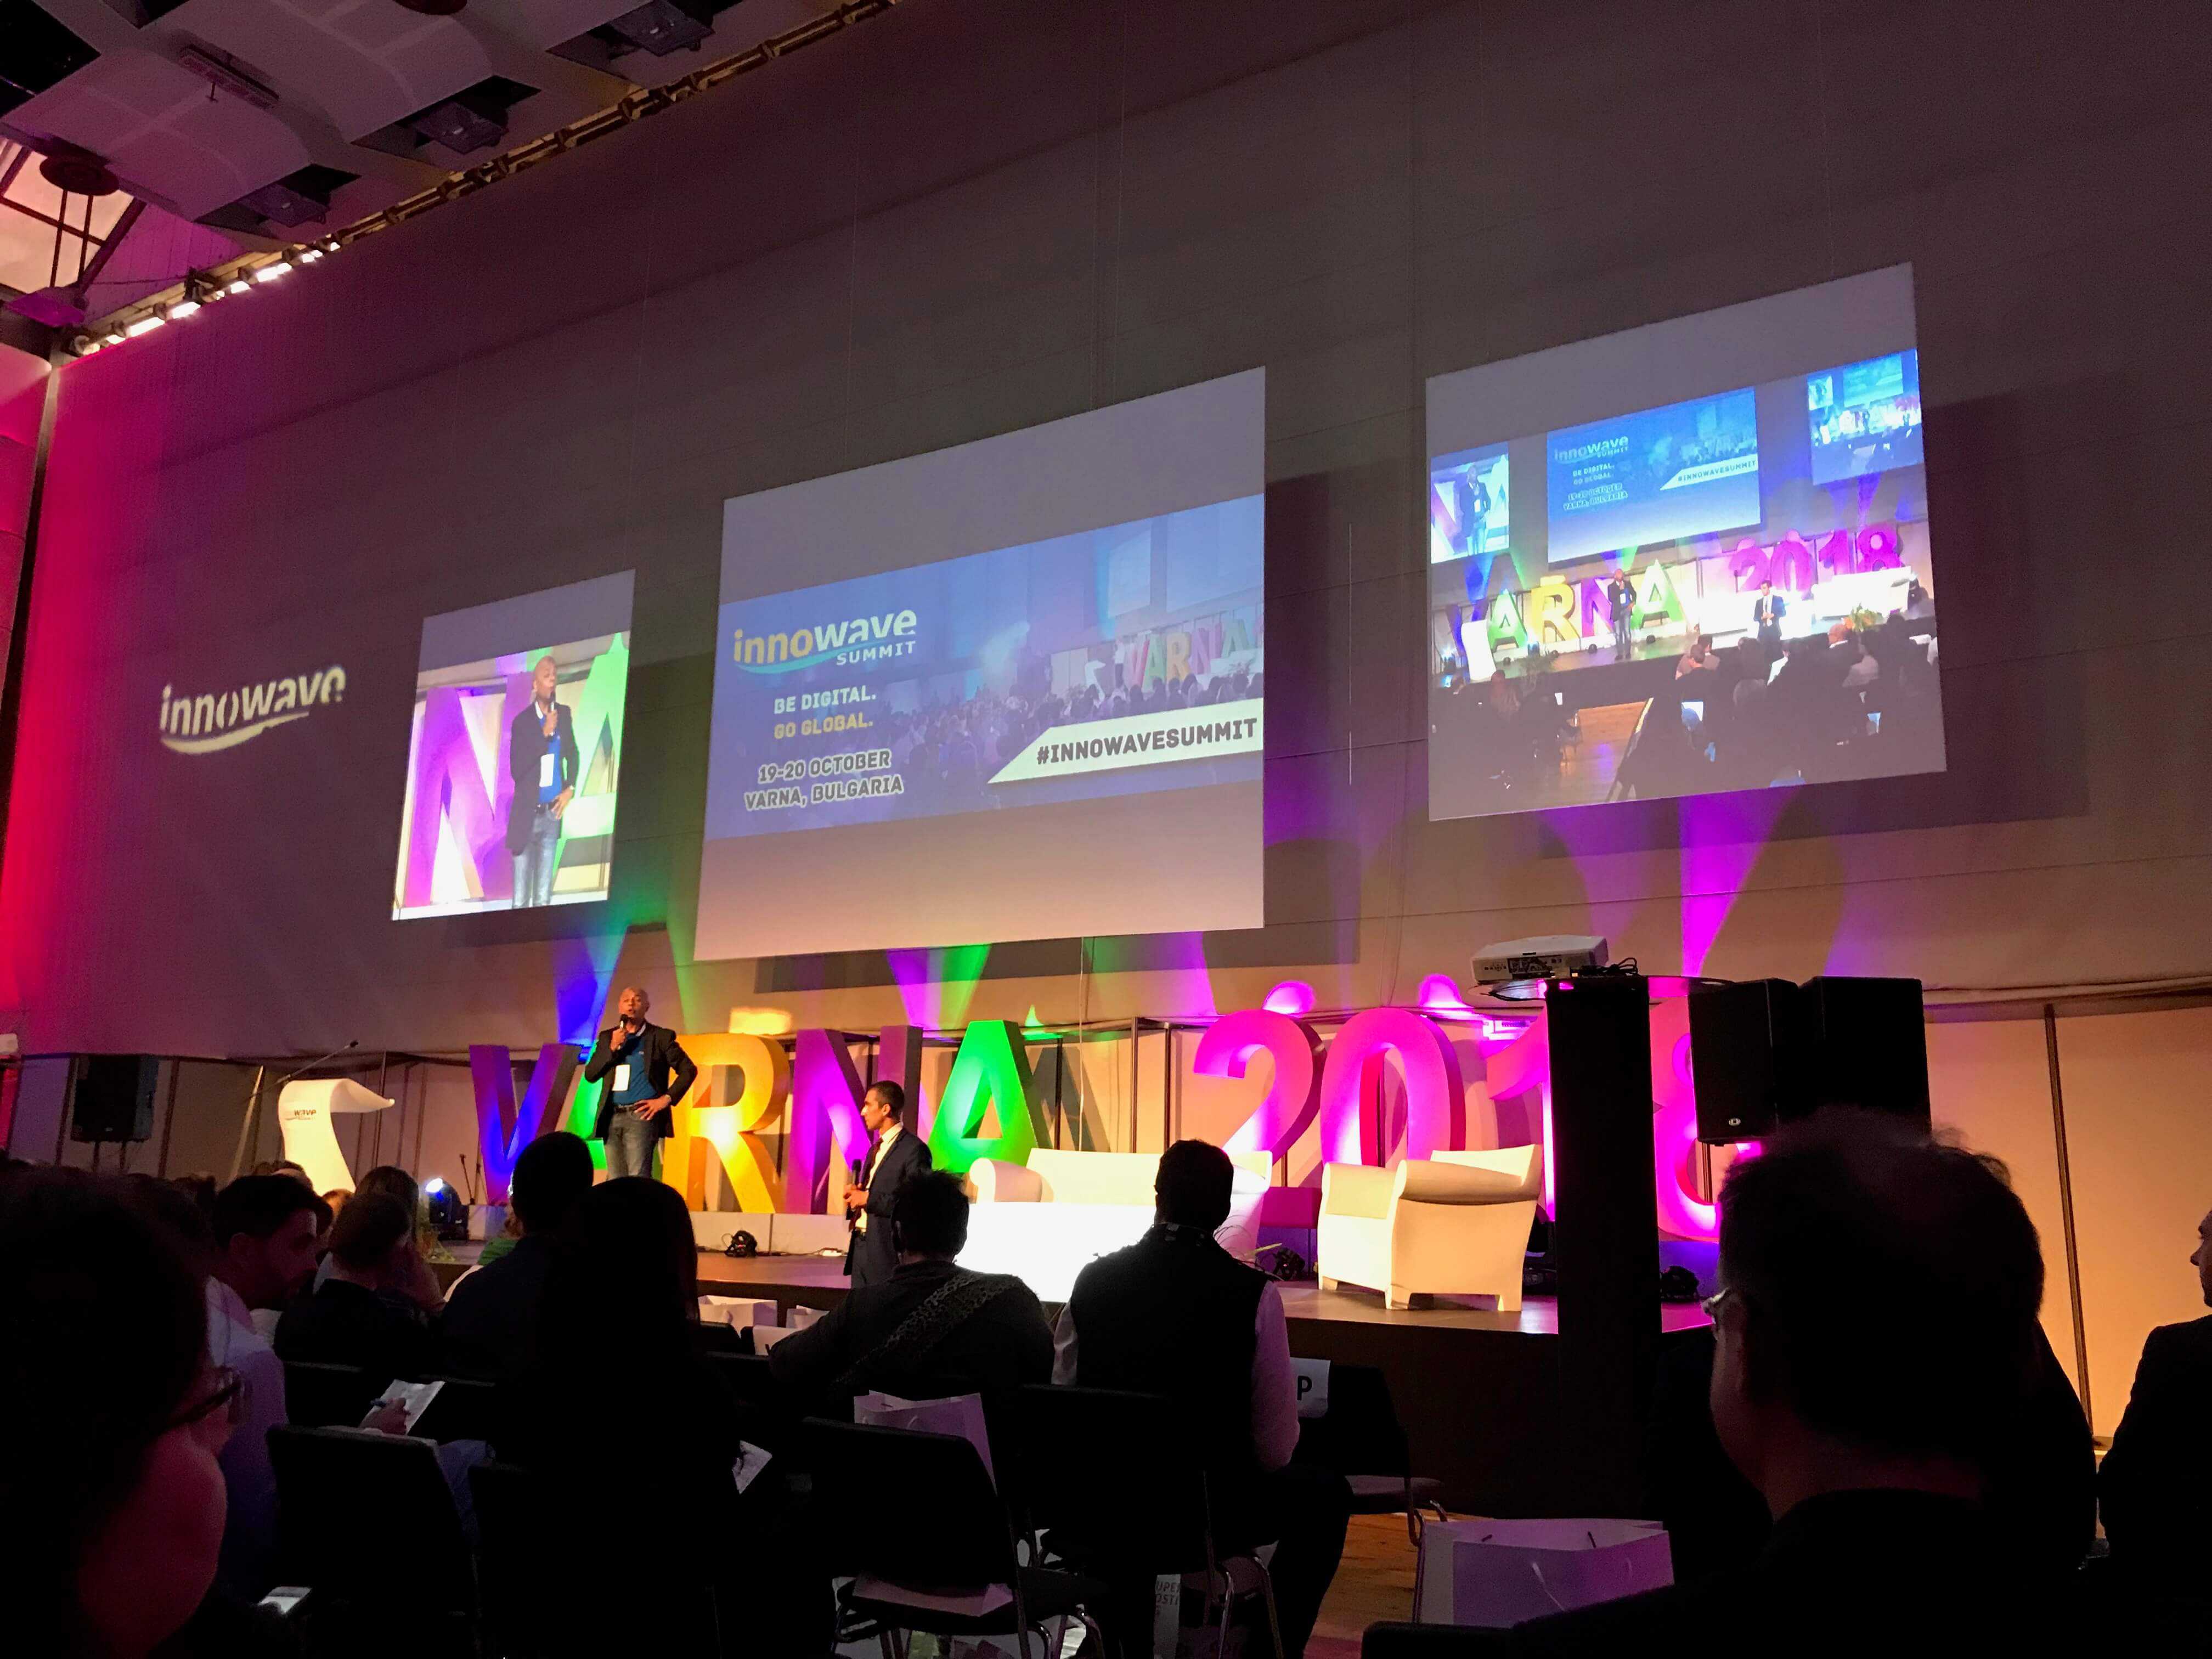 Започна най-мащабната високотехнологична конференция Innowave Summit 2018 във Варна